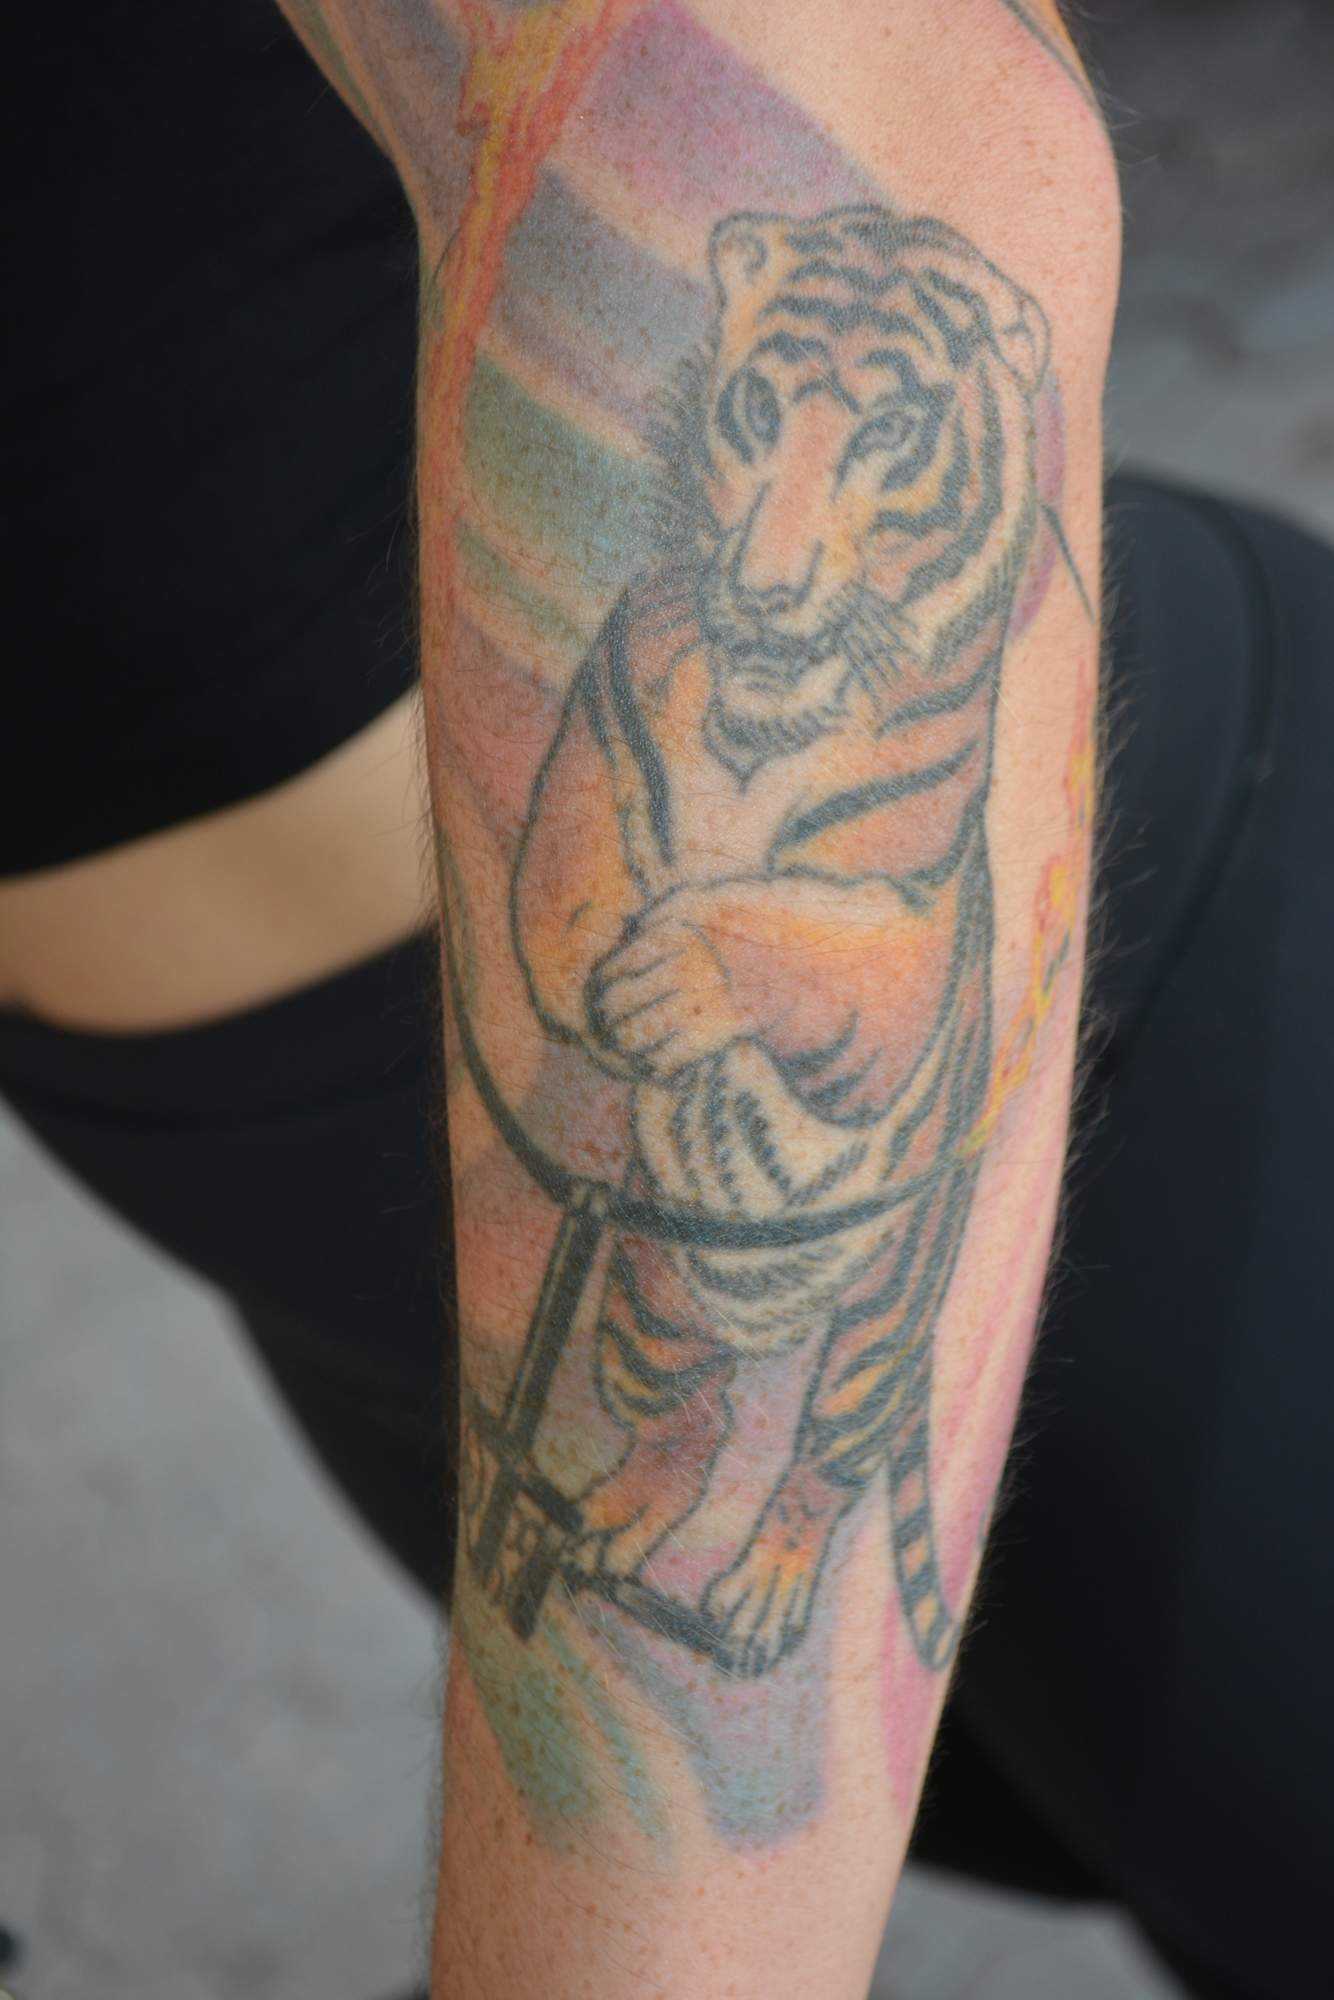 Erika Cain has a tattoo of a Bengal tiger.